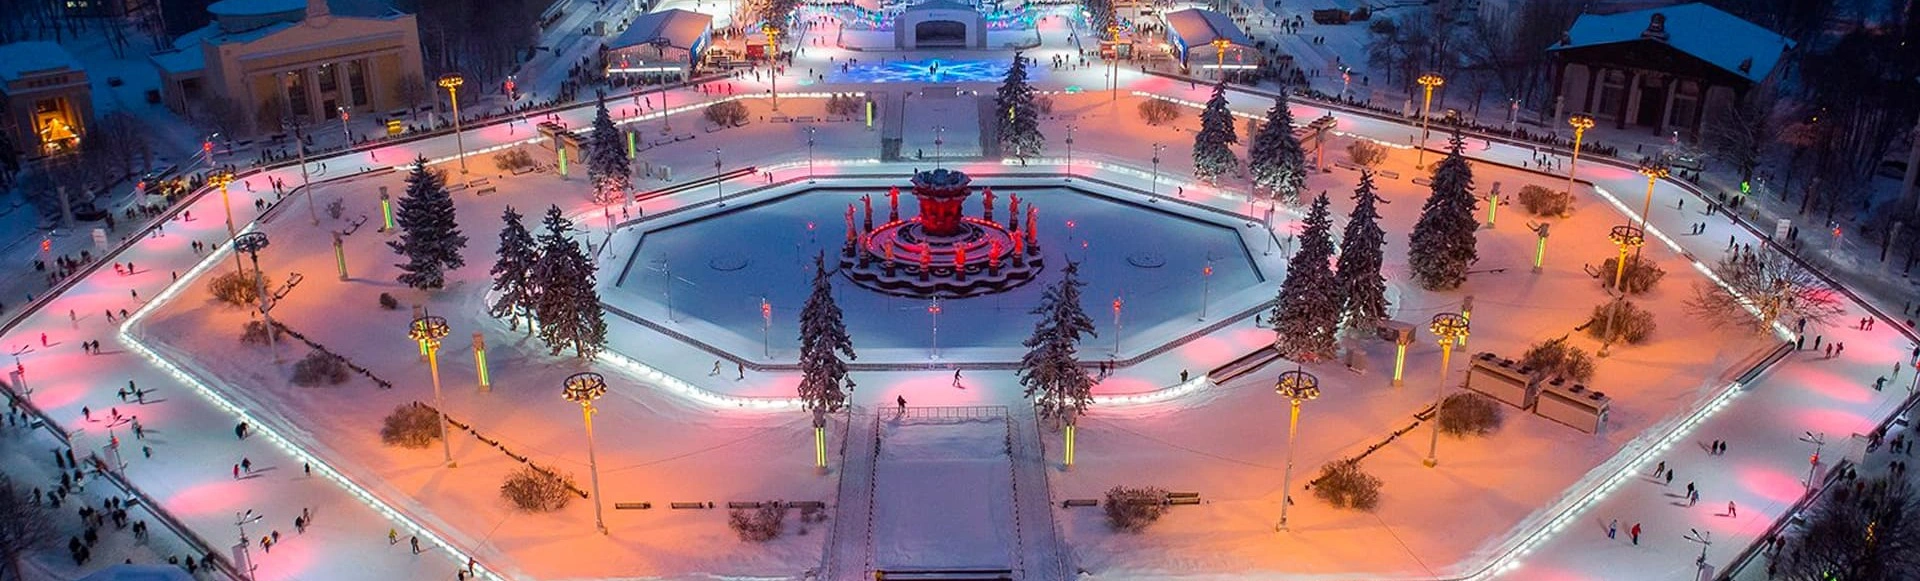 На ВДНХ открылся самый большой каток в Москве
